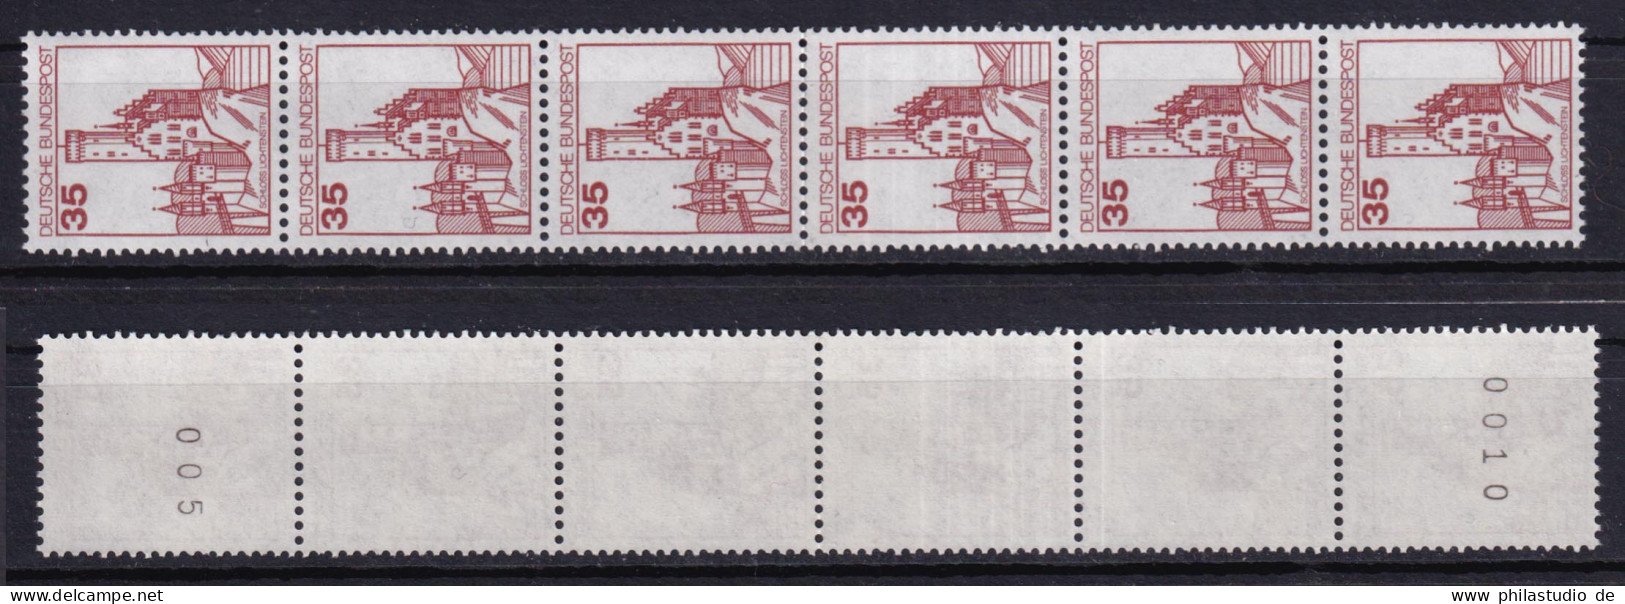 Bund 1139 RM 6er Streifen Burgen+Schlösser 35 Pf Postfrisch - Rollenmarken